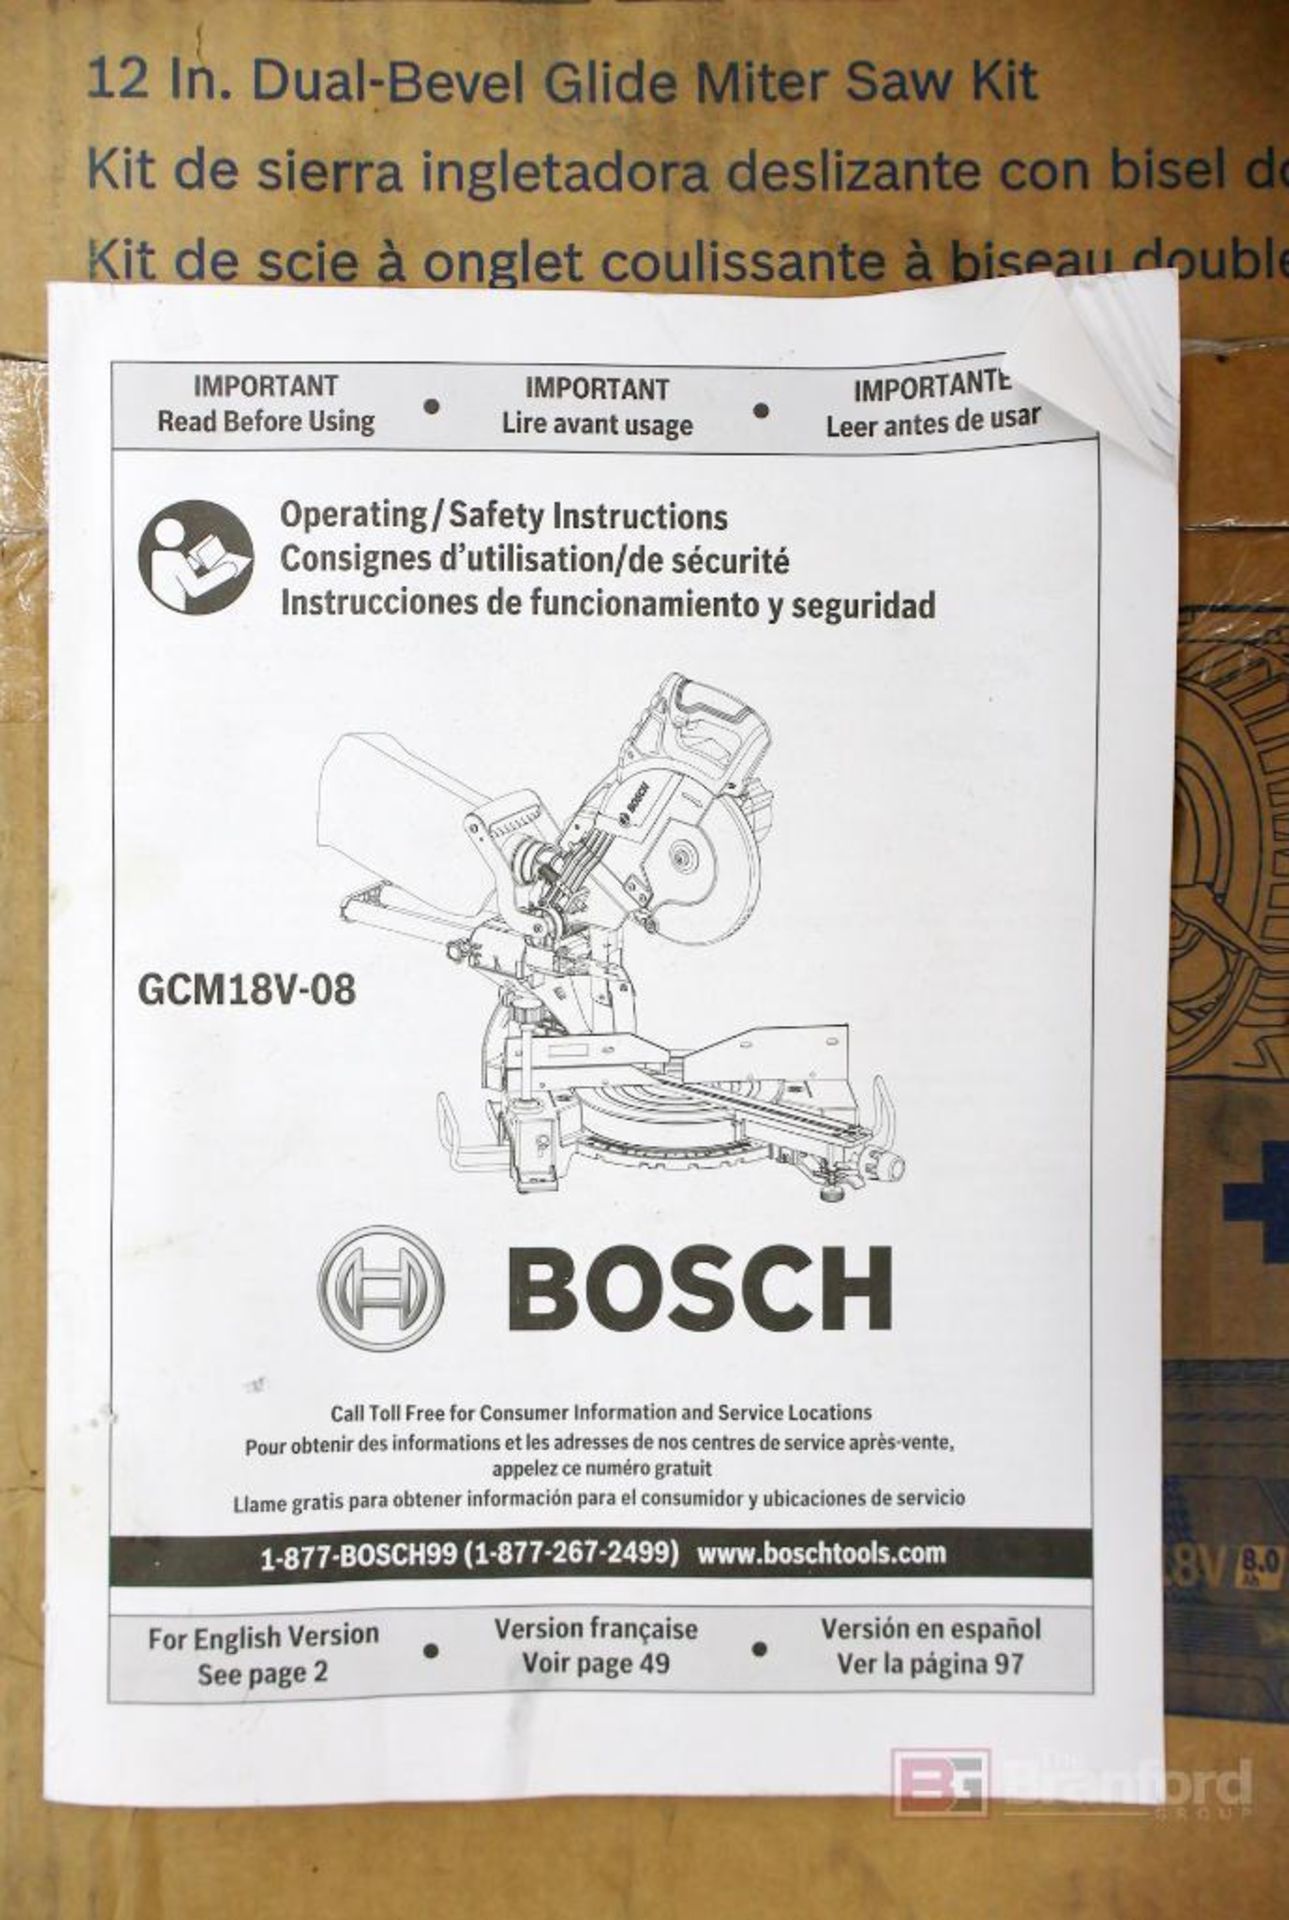 Bosch GCM18V-12GDCN14 ProFactor 12" Dual Bevel Glide Miter Saw Kit - Image 5 of 6